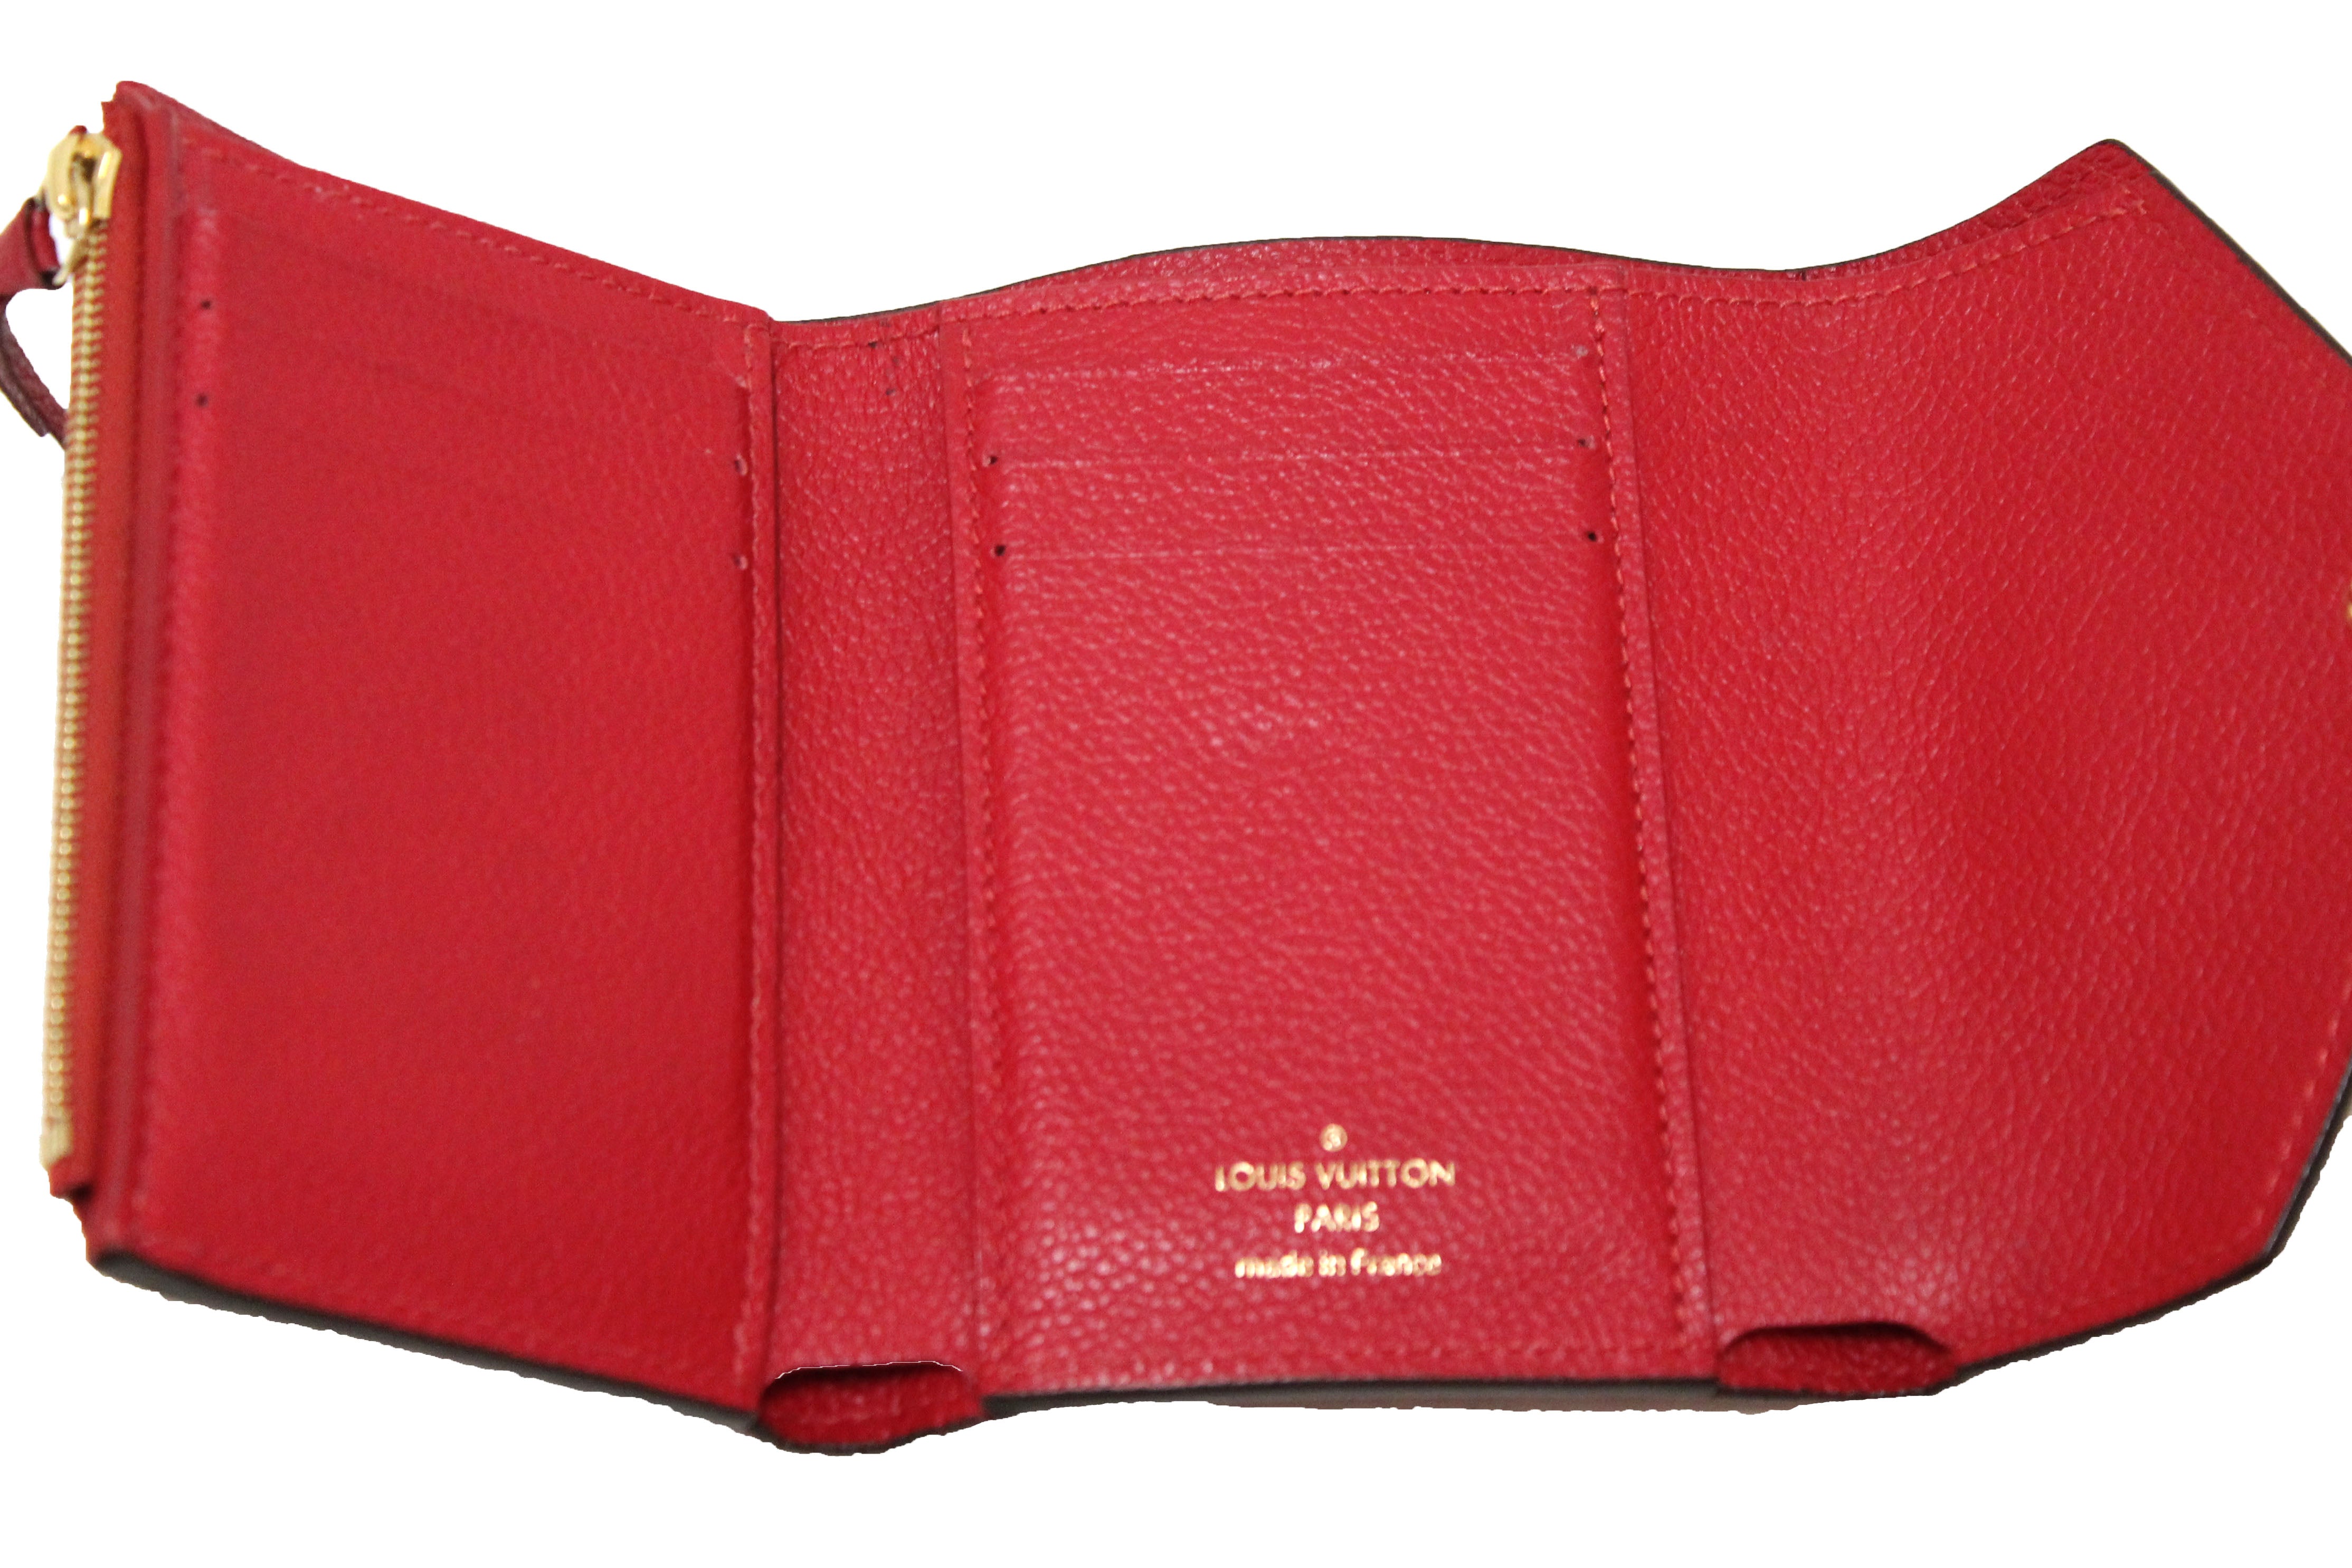 strap monogram empreinte leather wallets